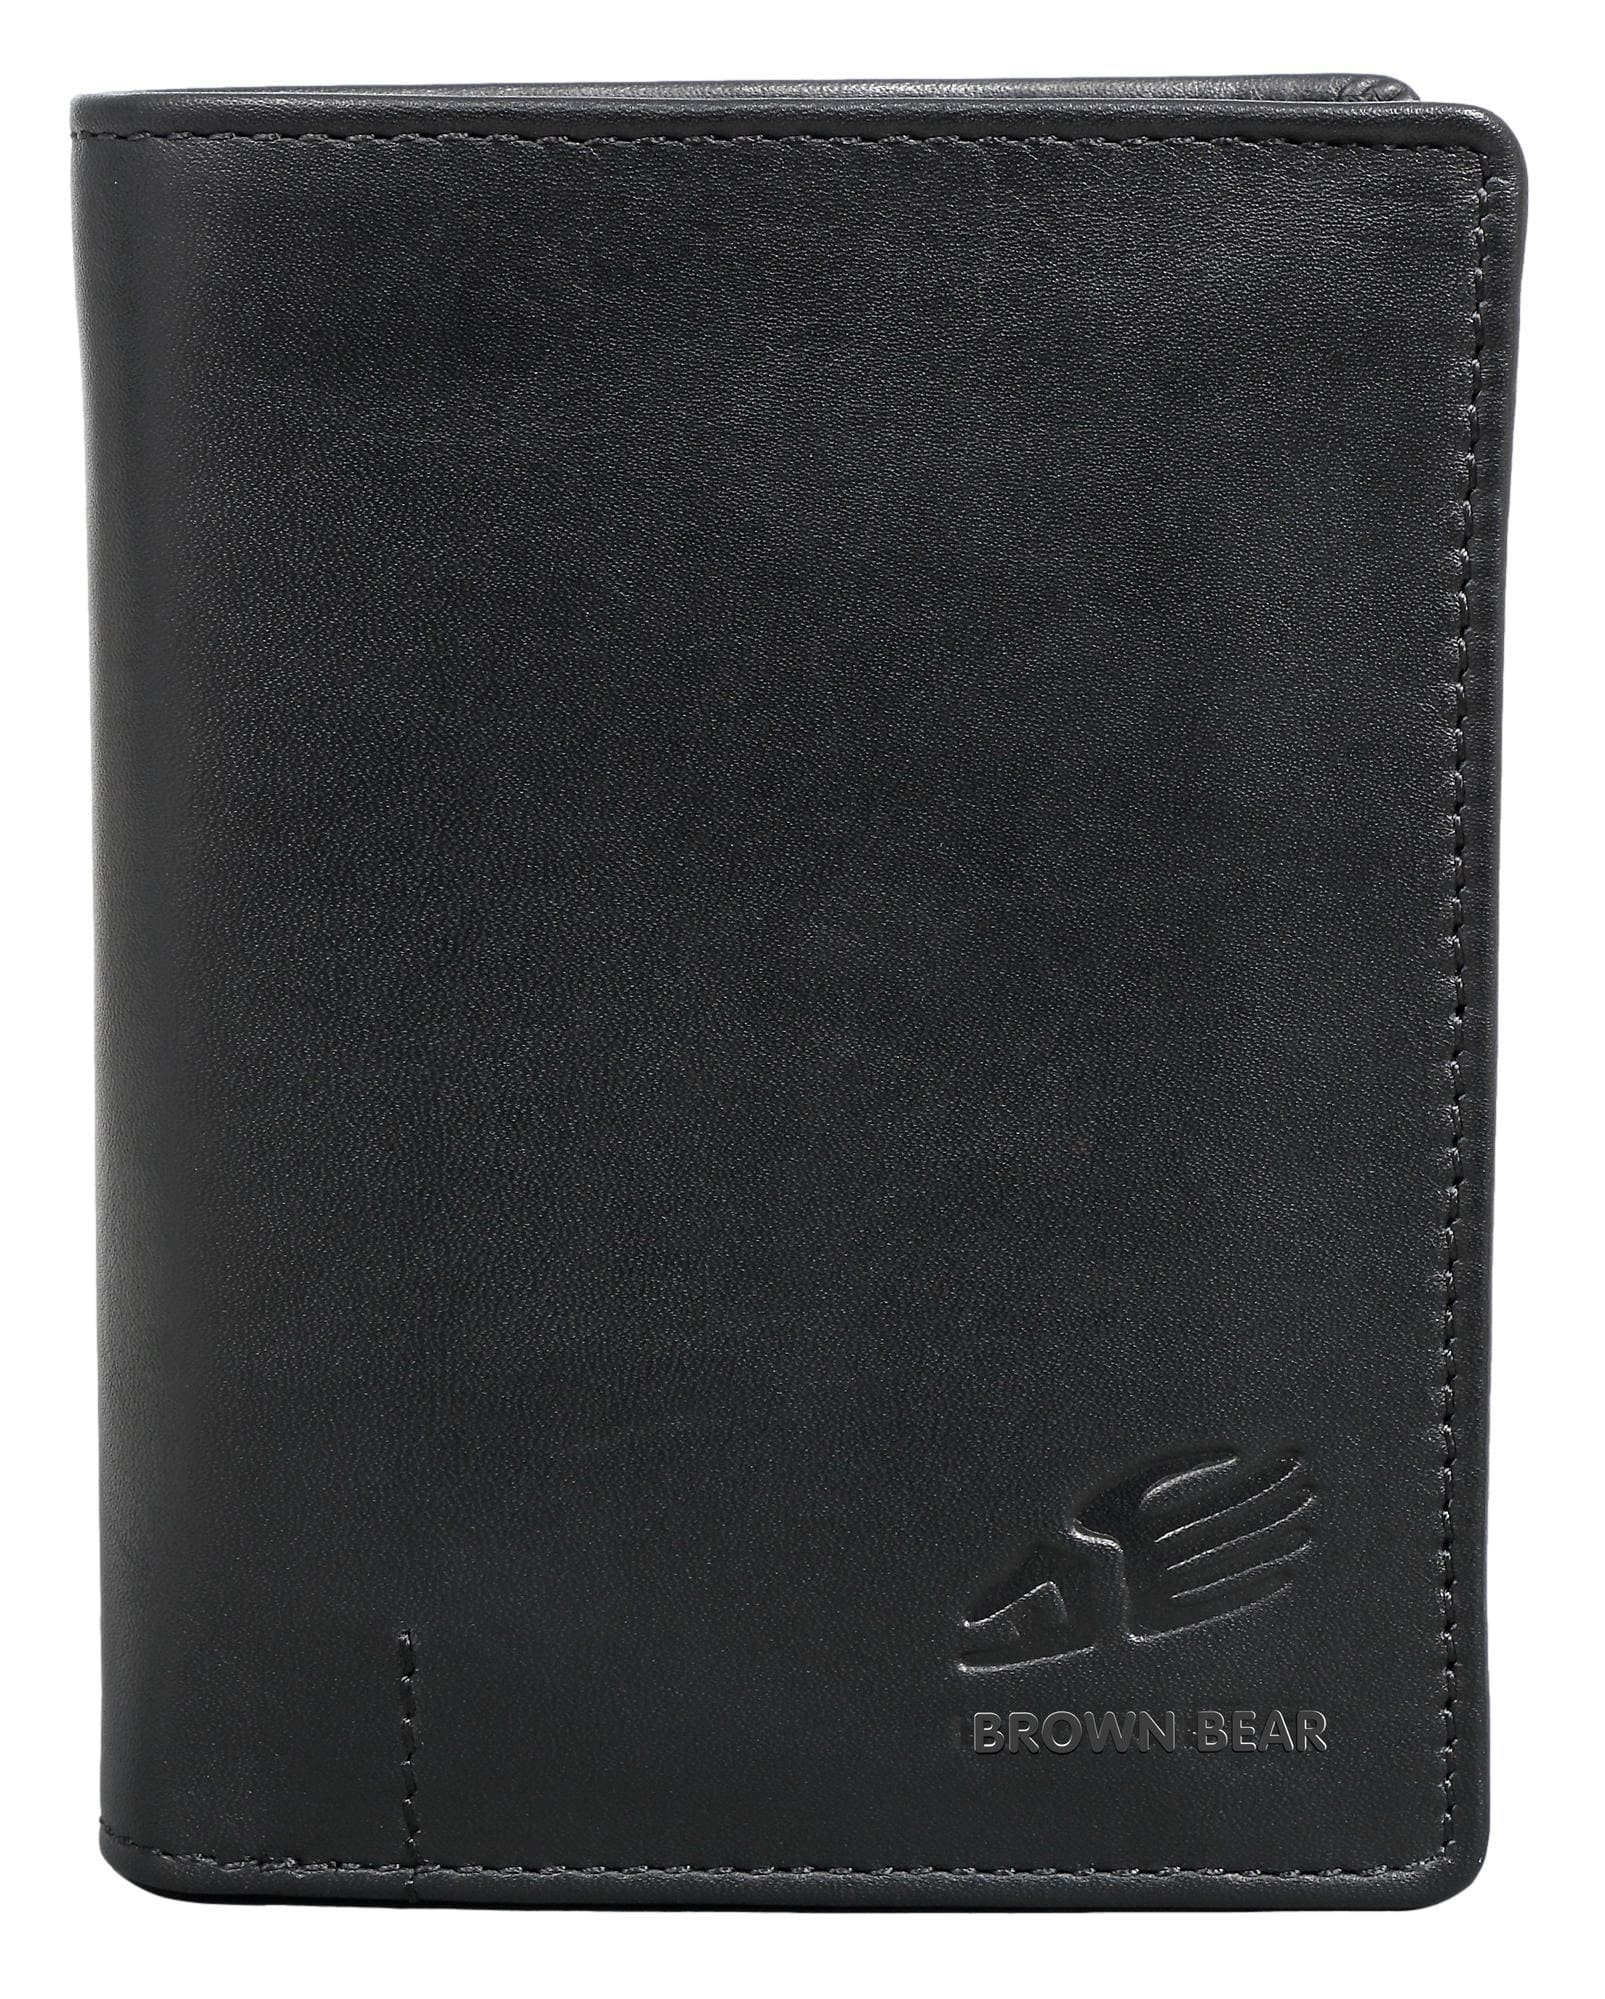 Brown Bear Geldbörse IBP 2051 Reißverschlussinnenfach Unisex Echtleder, 11 Kartenfächer Sichtfach RFID Schutz Schwarz Schwarz Nappa